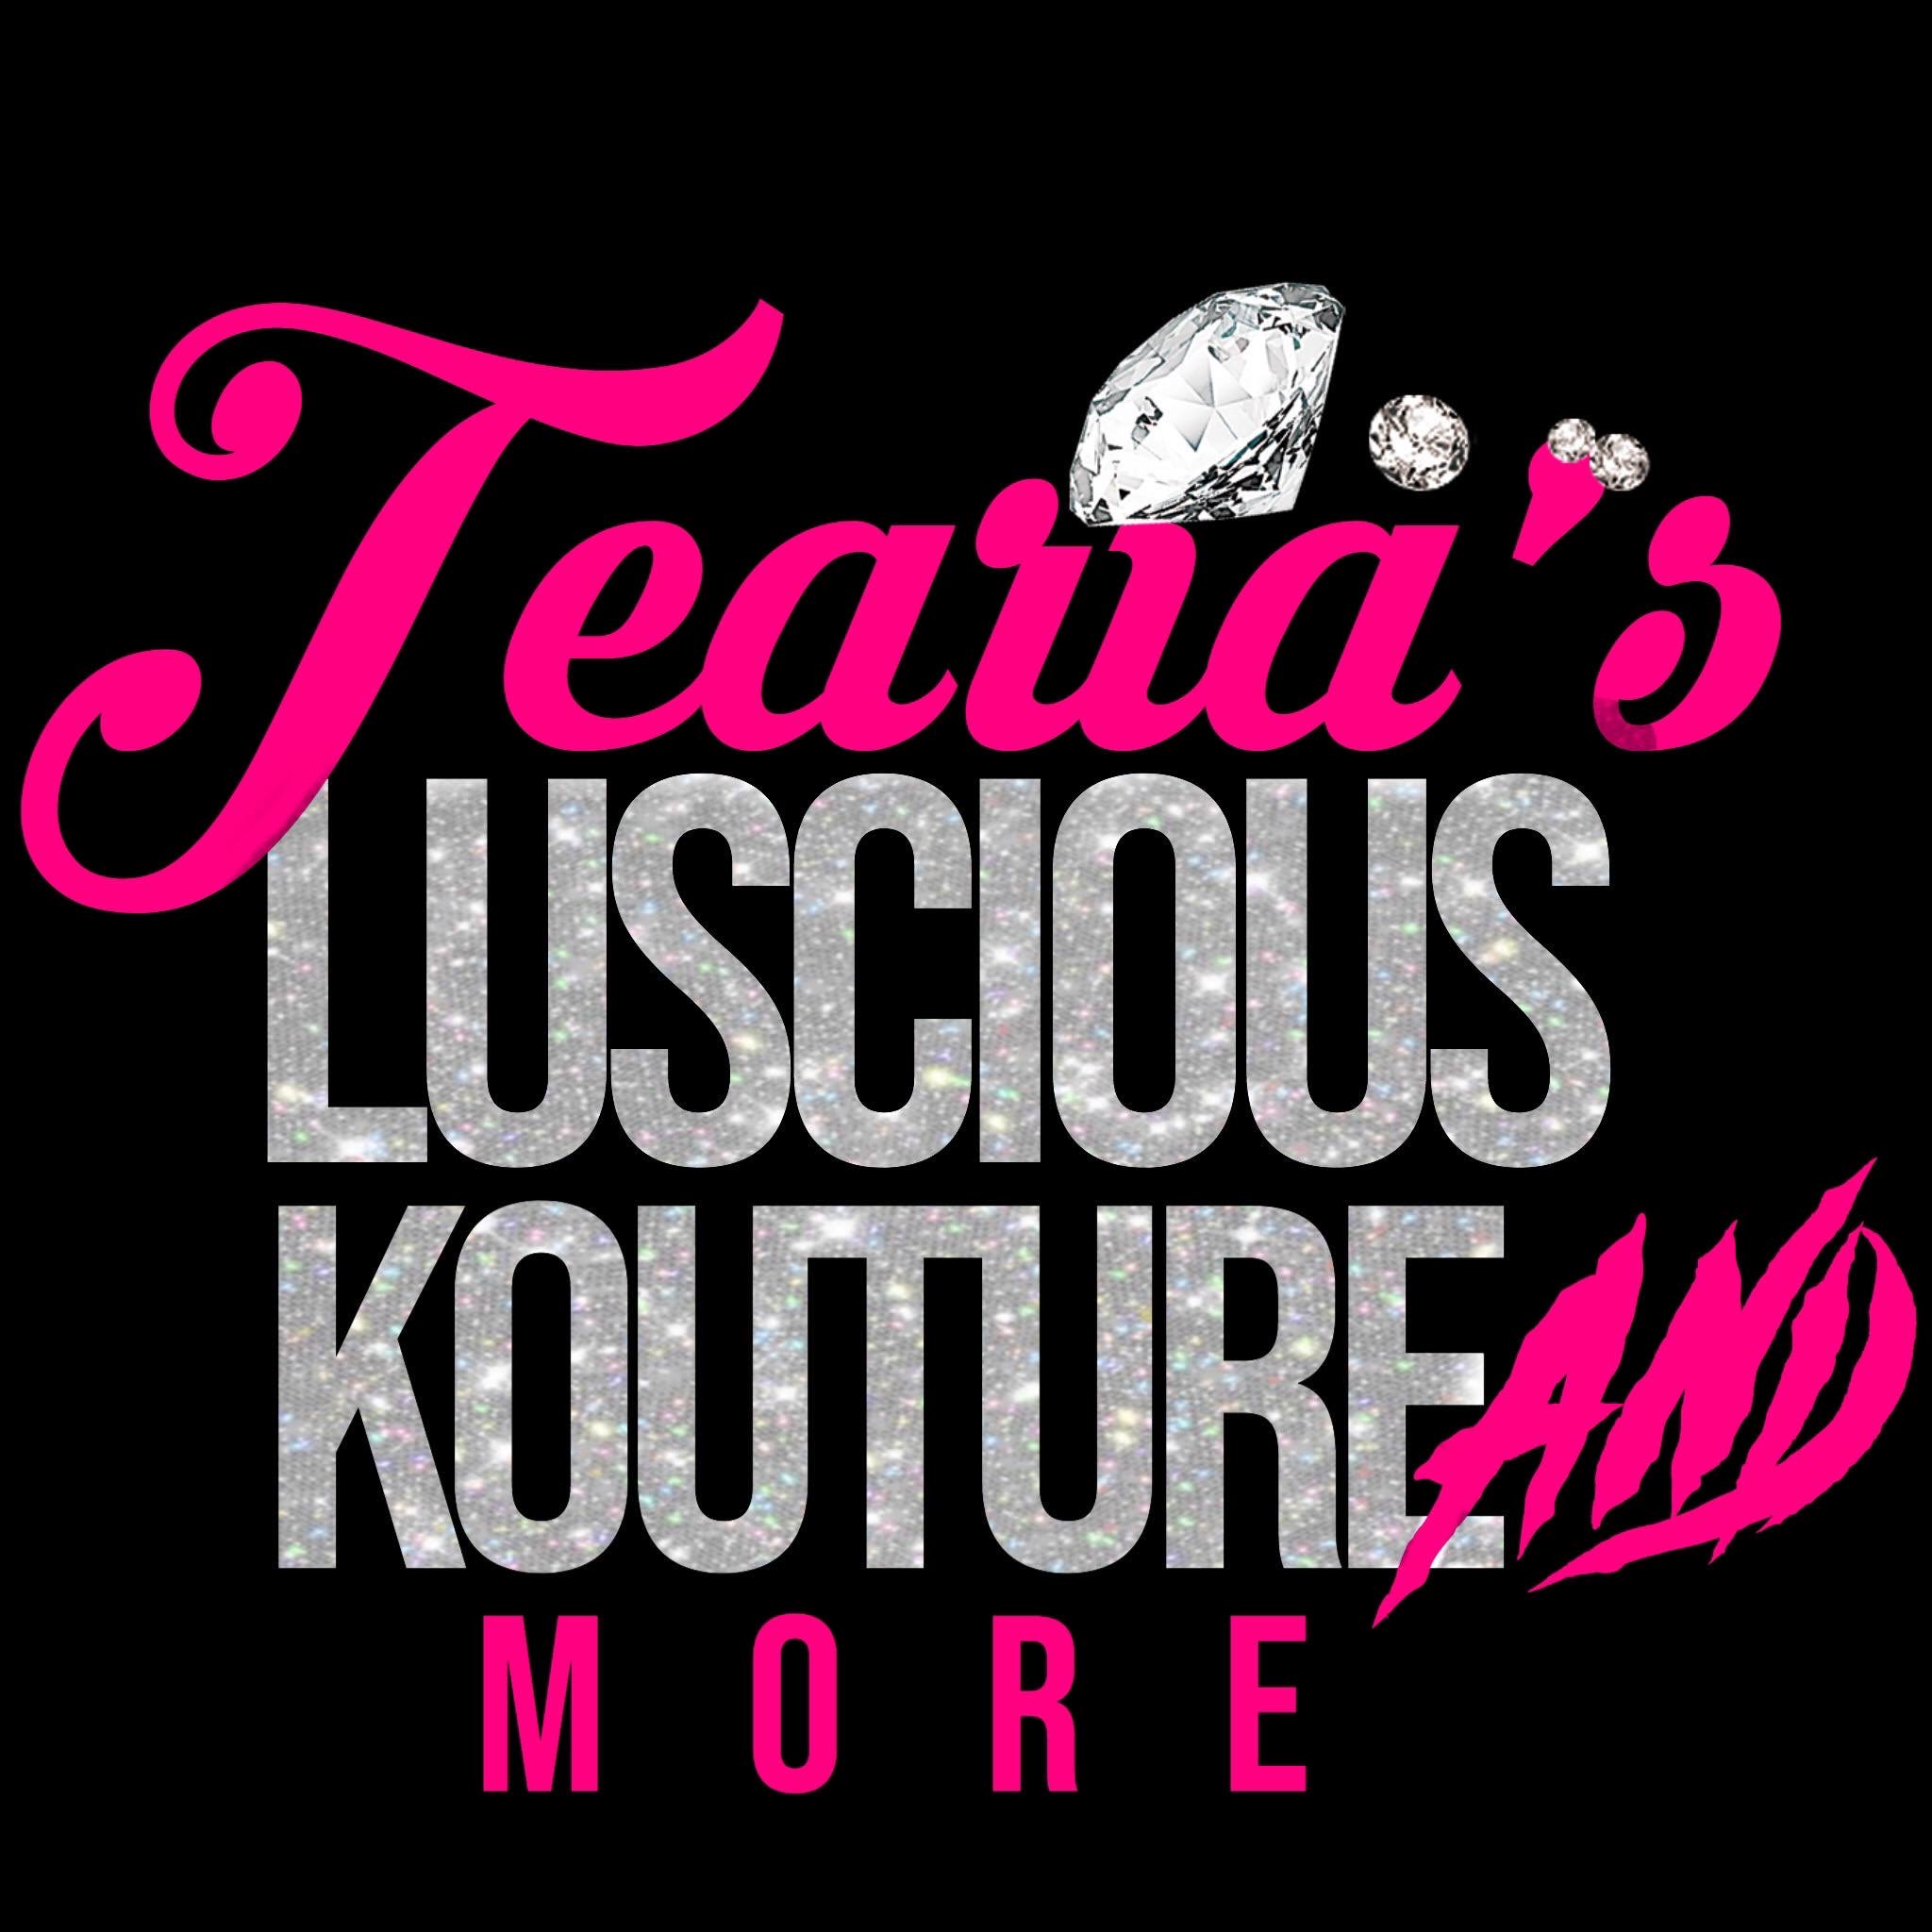 Tearia’s Luscious Kouture